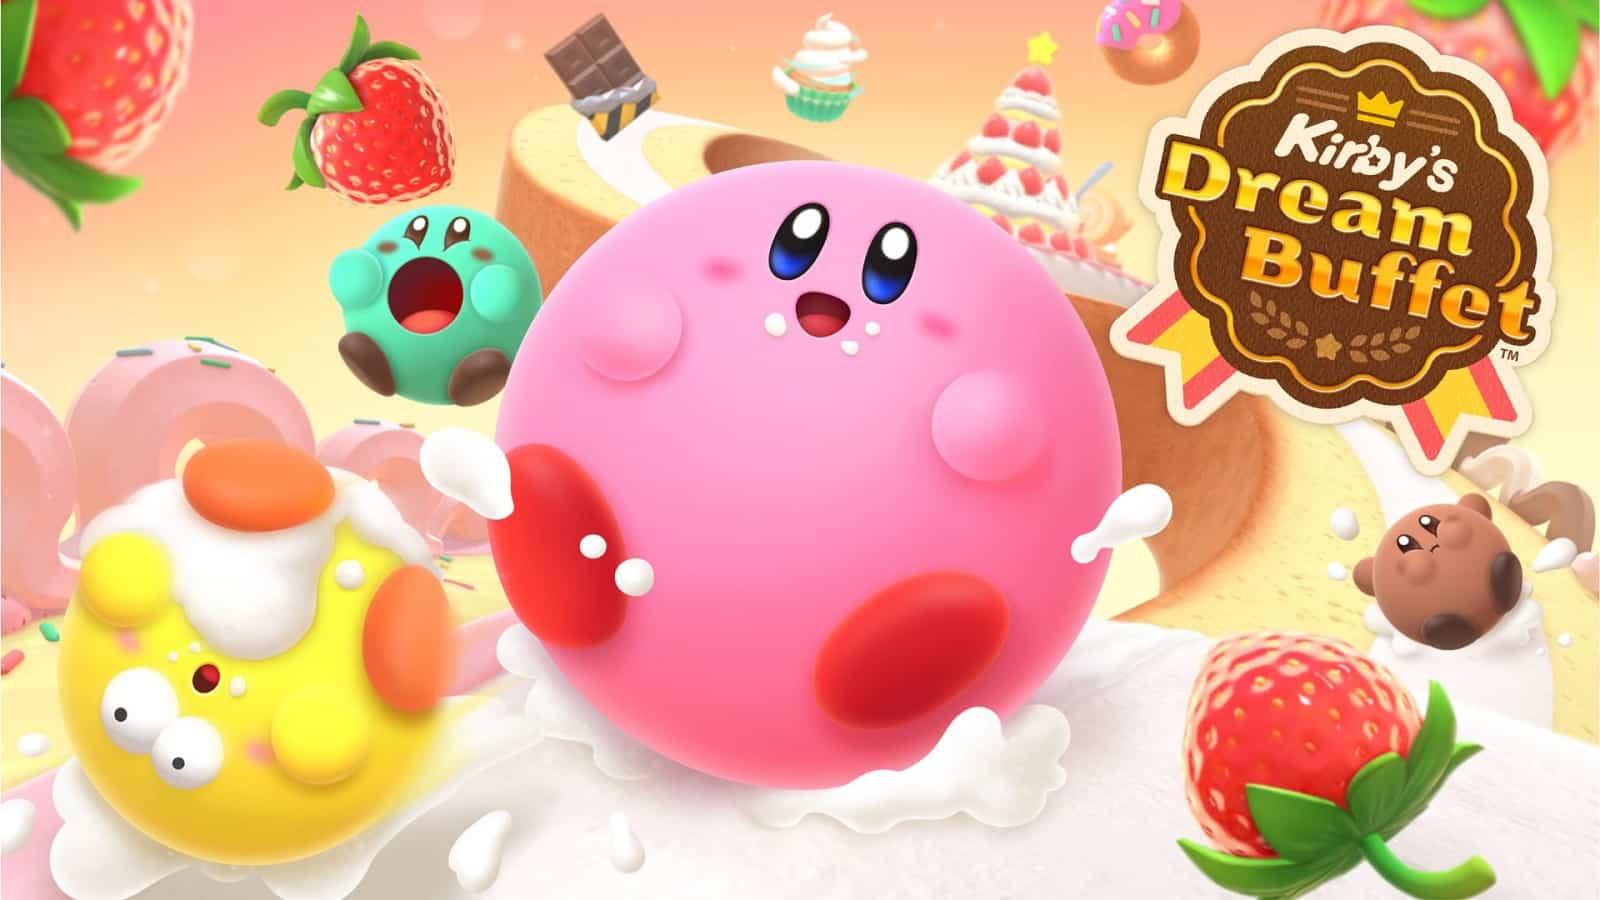 Kirby's Dream Buffet official artwork